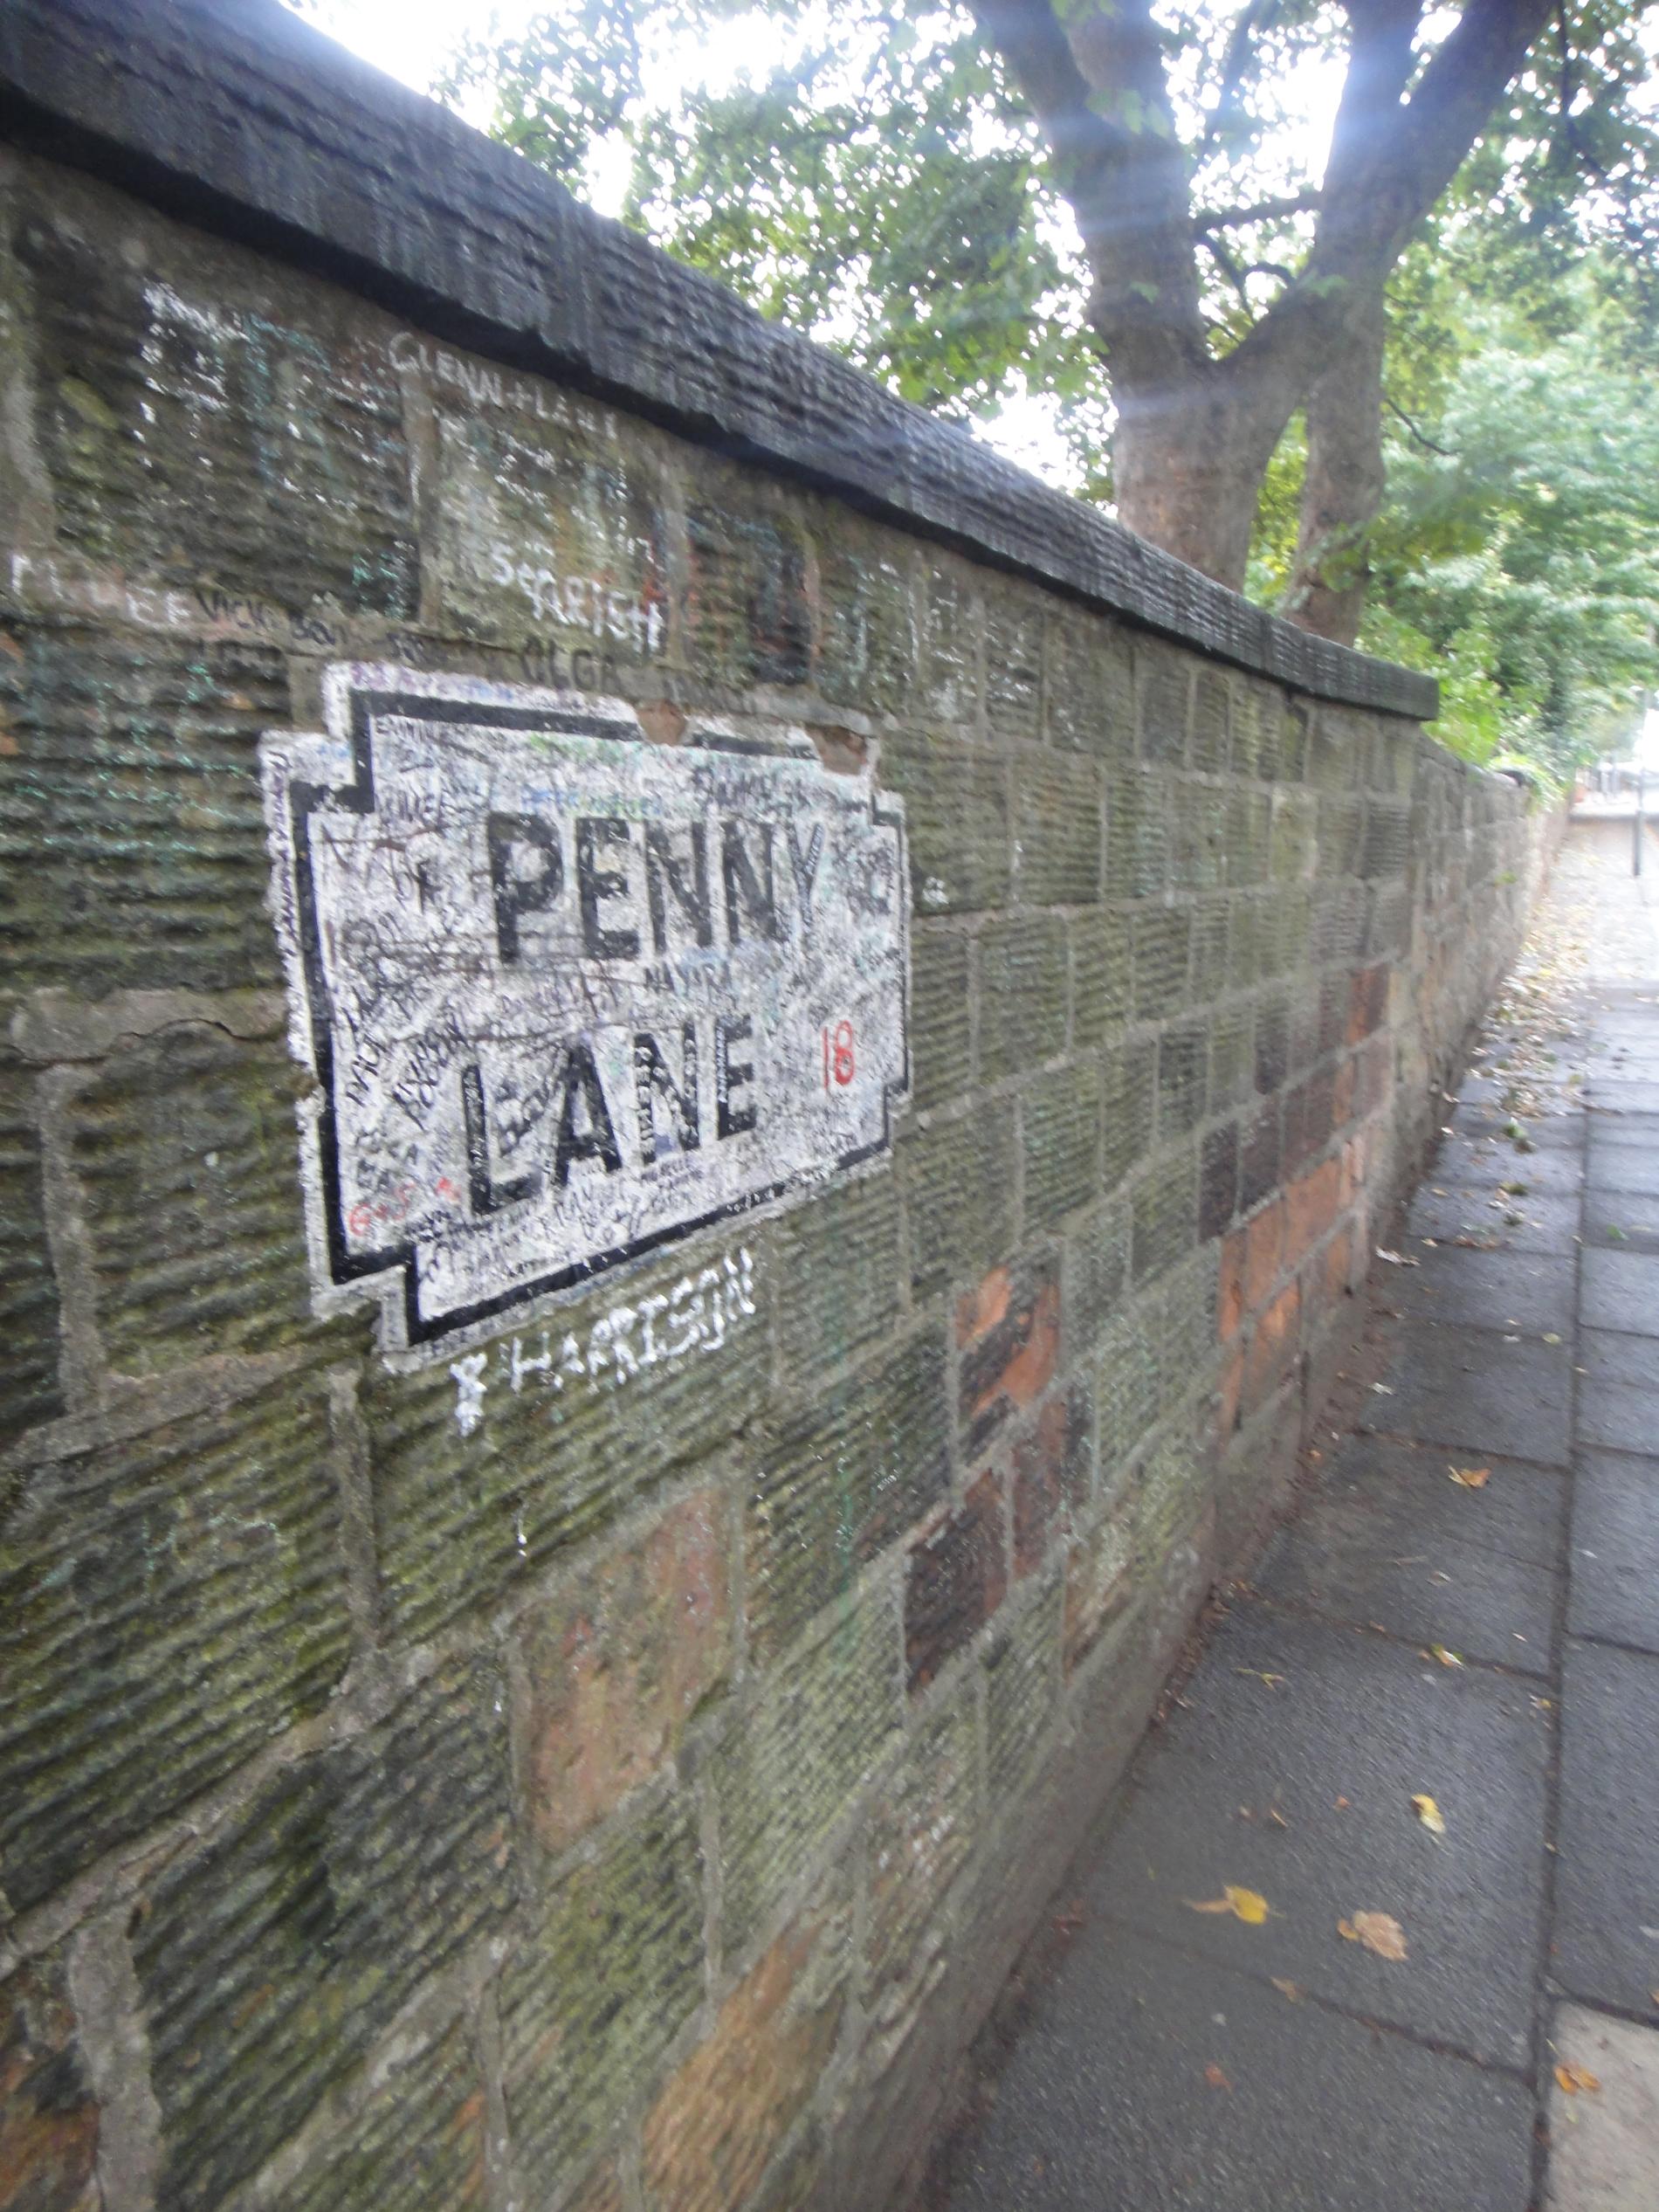  Penny Lane står det malt på en vegg i Liverpools mest berømte gate. Det opprinnelige metallskiltet ble stadig vekk stjålet av Beatles-fans, og løsningen var å male gatenavnet på veggen. Det hindrer ikke turister i å skrible rundt det berømte gatenavnet. 